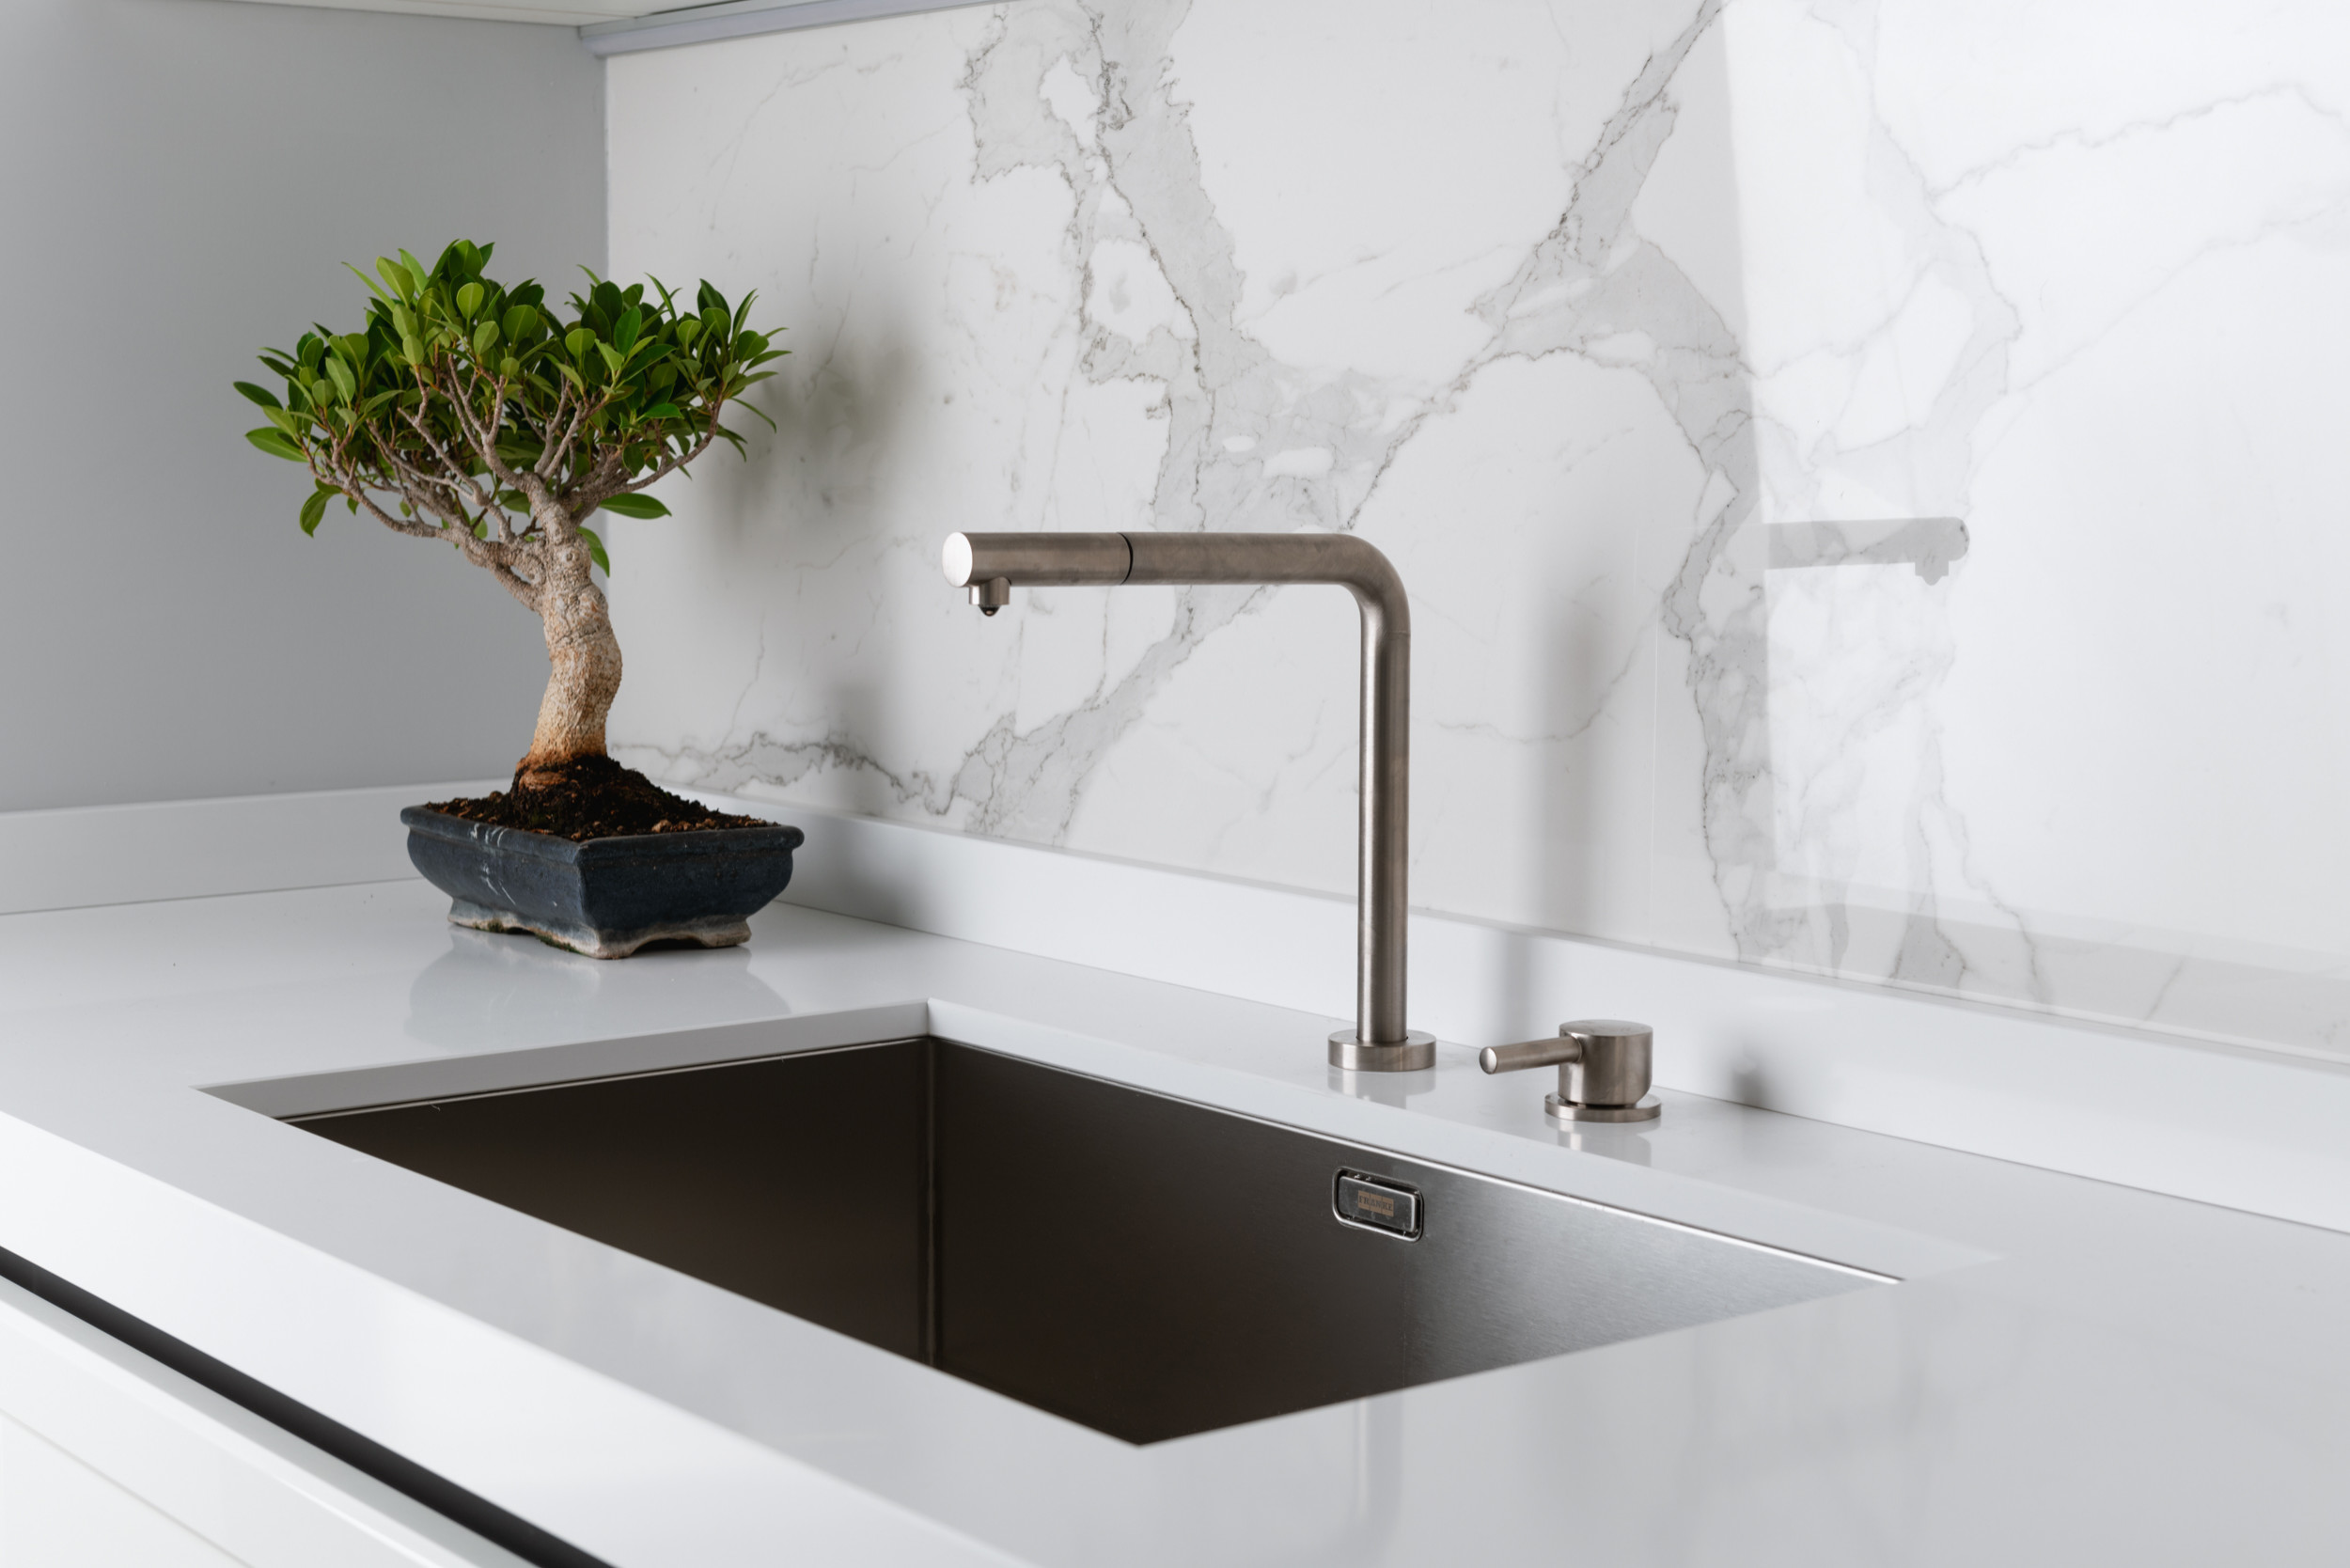 CUCINA - dettaglio lavello vasca unica in acciaio inox - Contemporary -  Kitchen - Rome - by OPA architetti Roma | Houzz